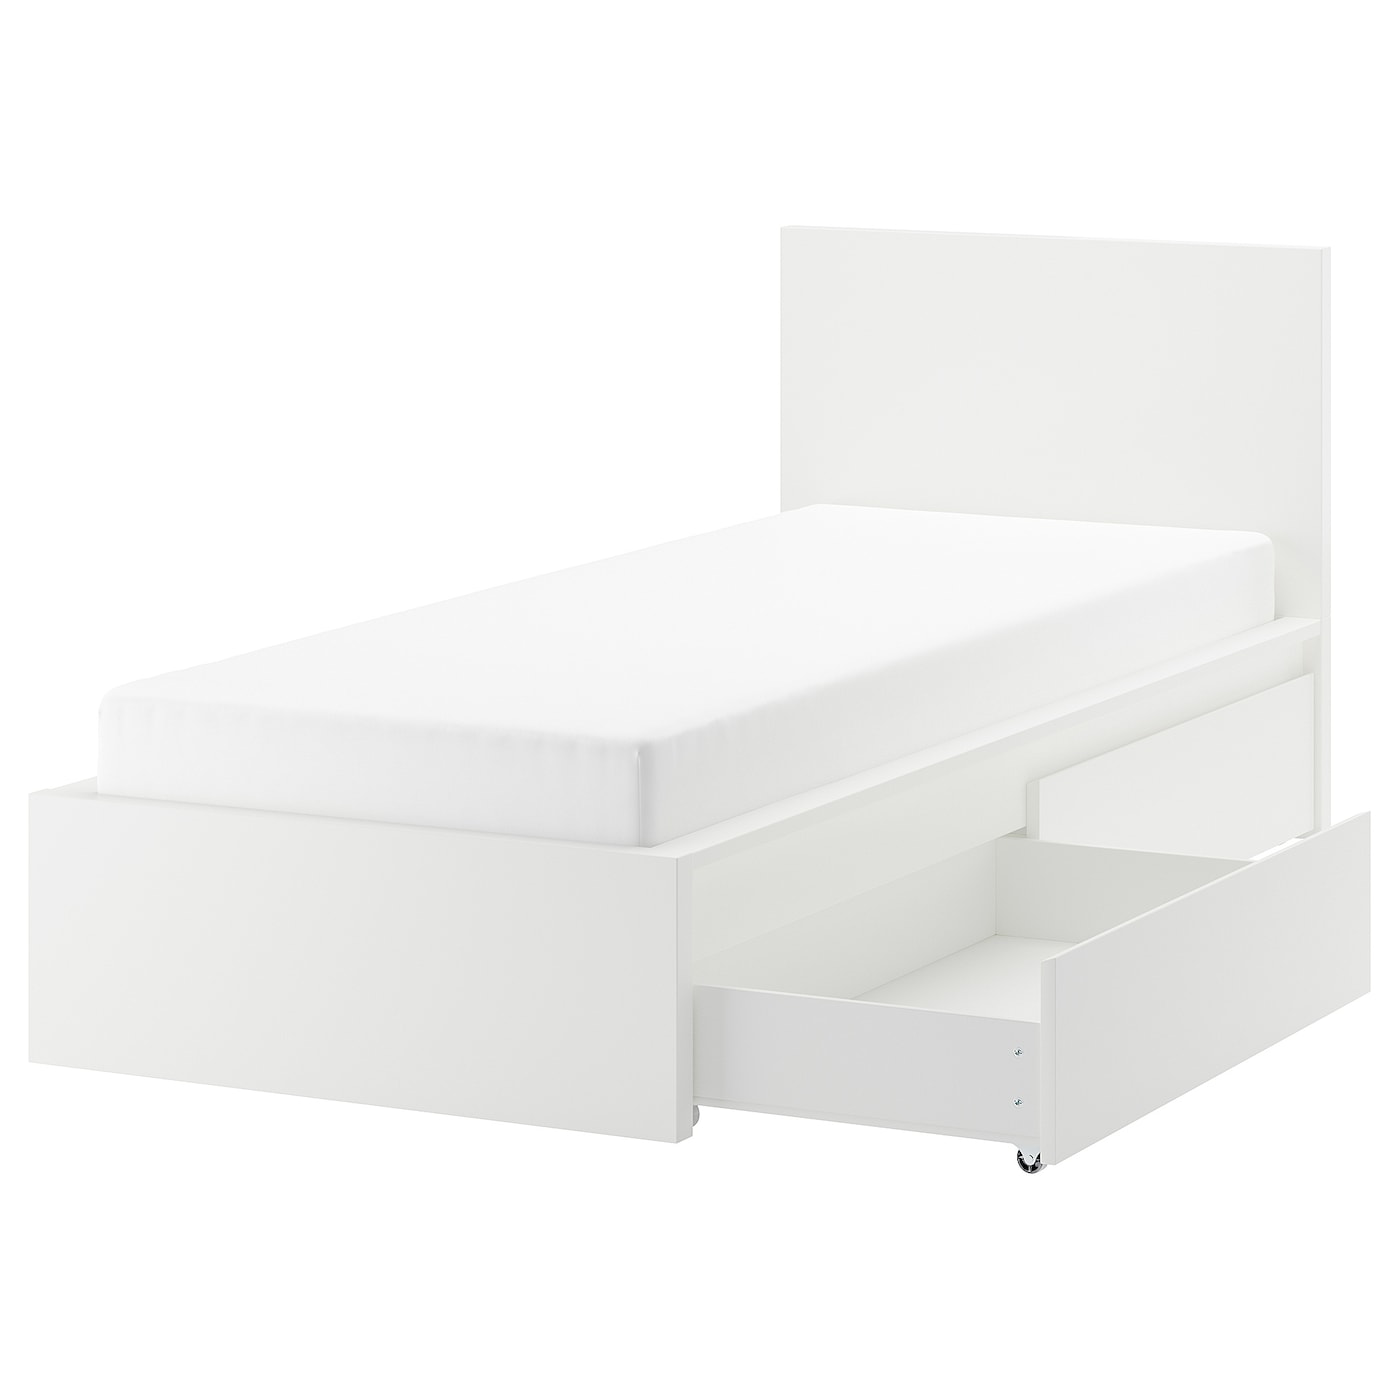 Каркас кровати с 2 ящиками для хранения - IKEA MALM/LINDBАDEN/LINDBÅDEN, 90х200 см, белый  МАЛЬМ/ЛИНДБАДЕН ИКЕА